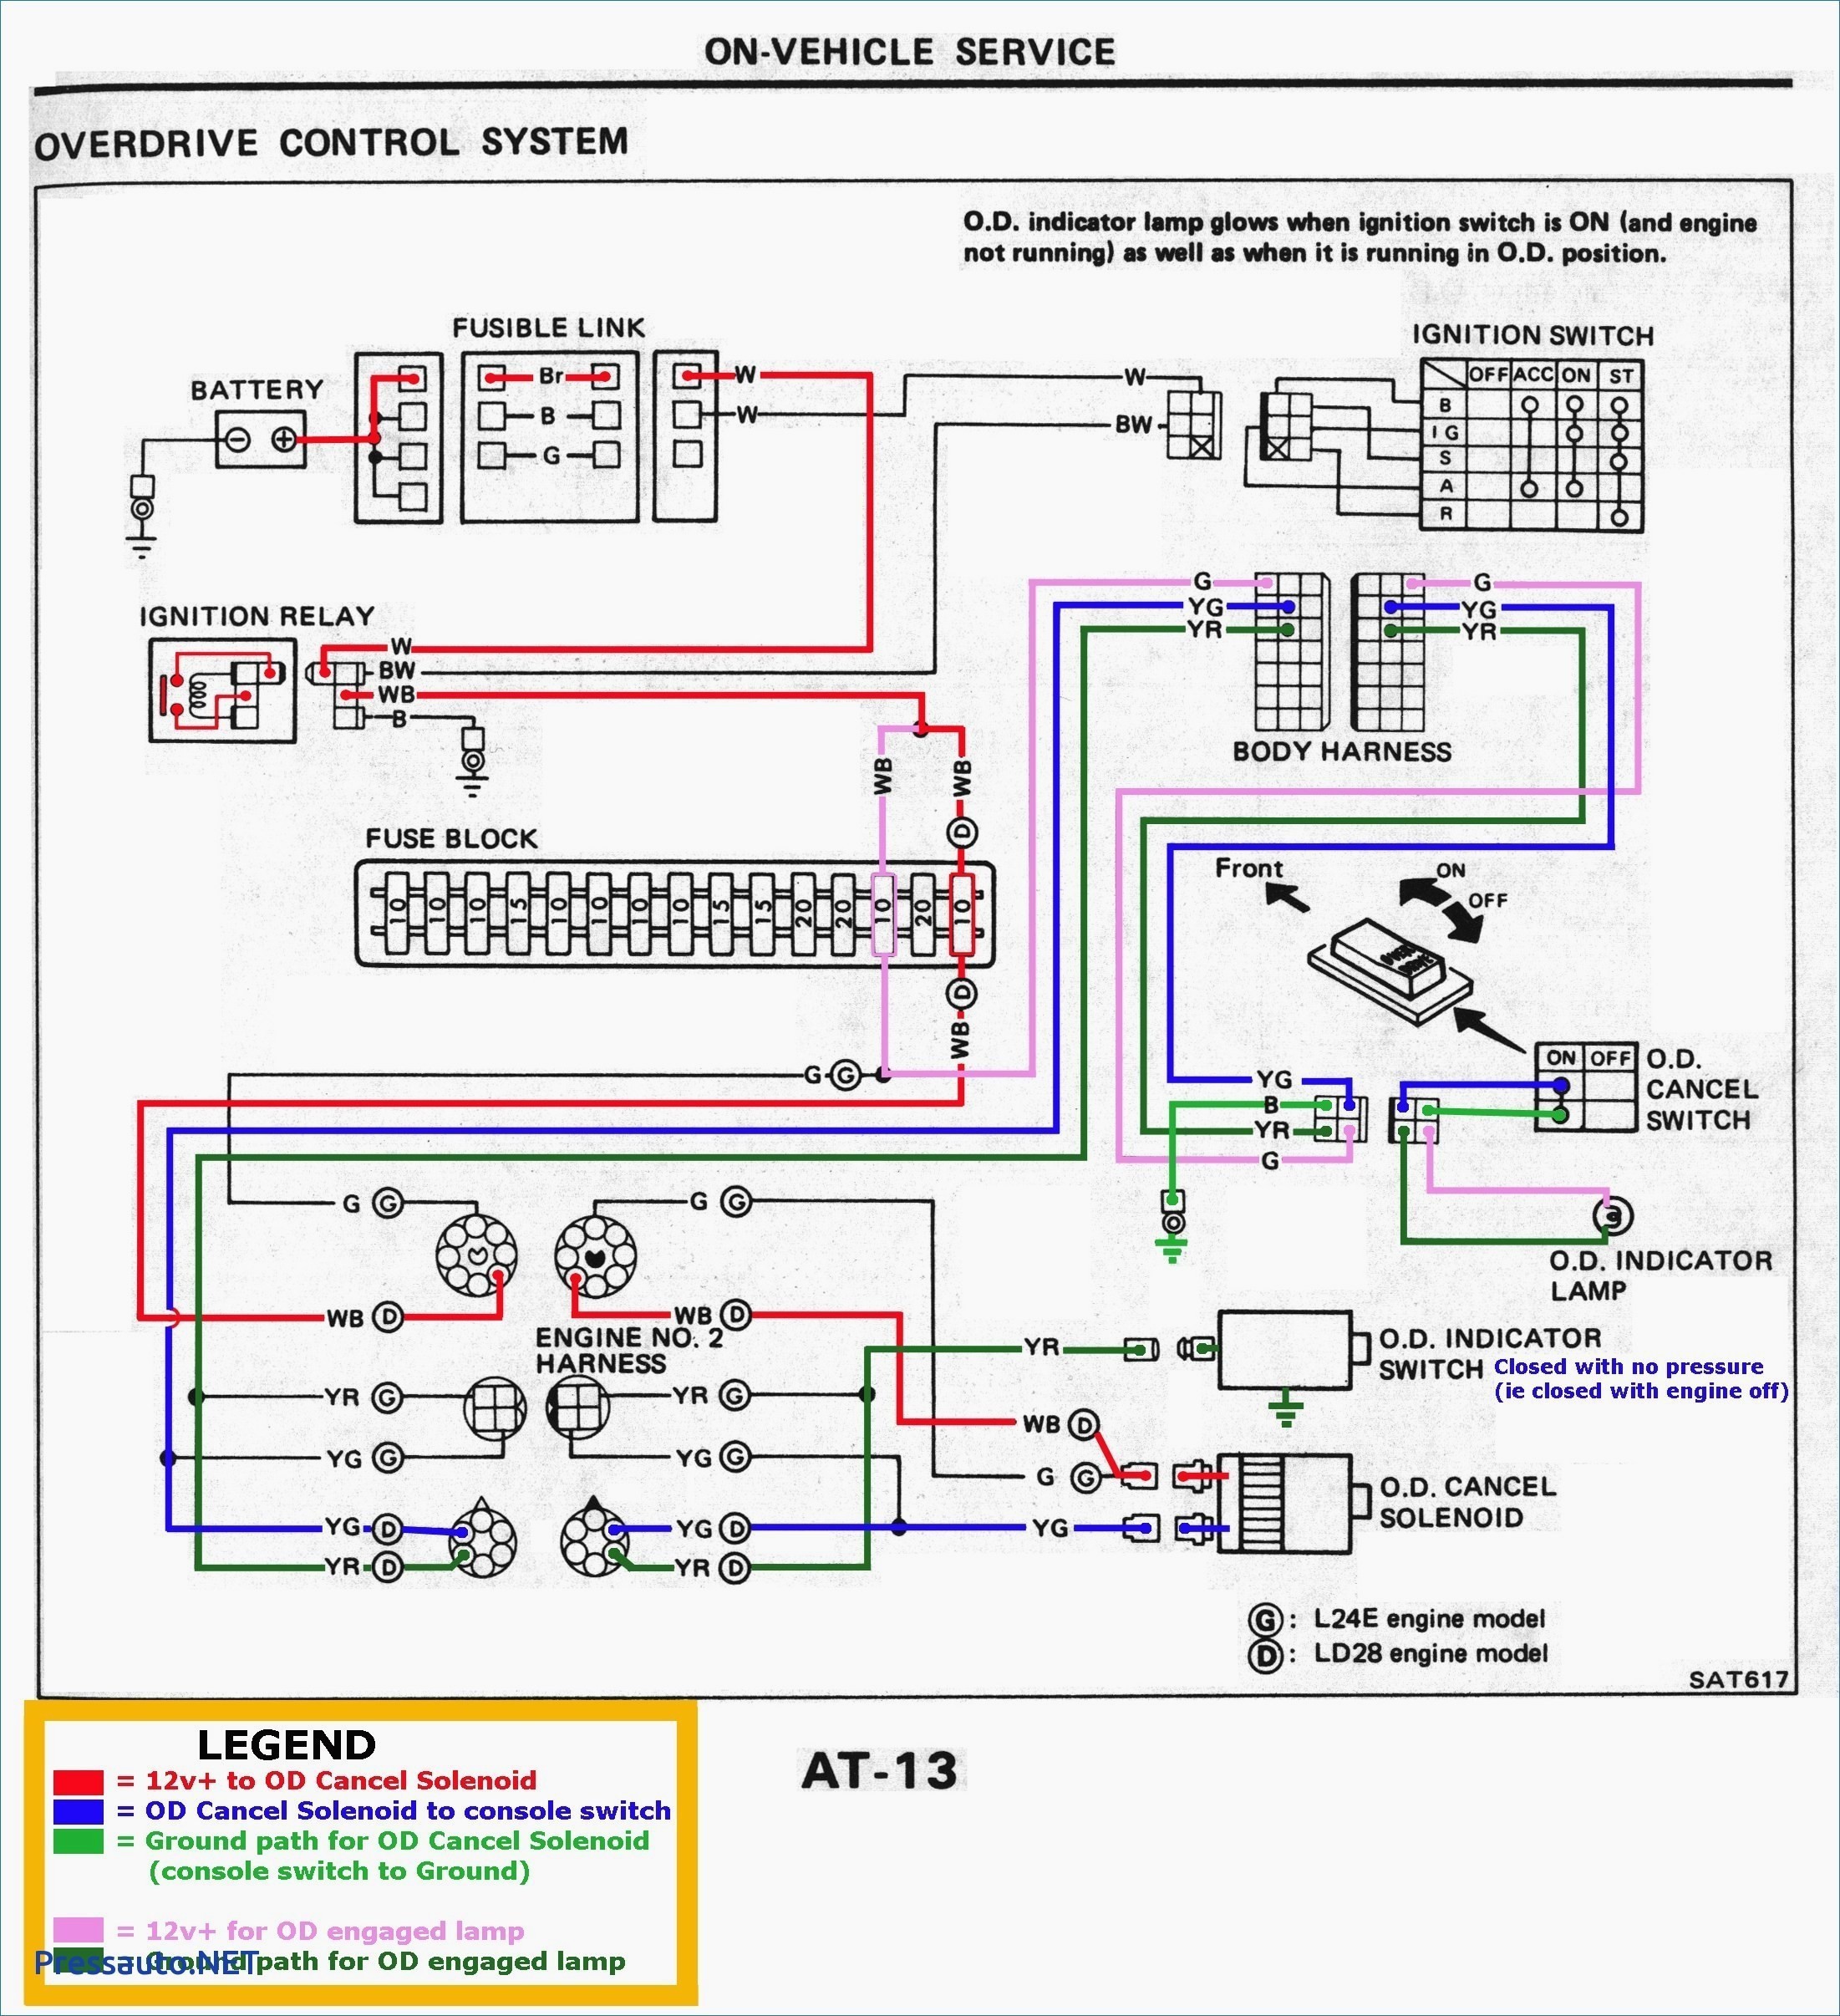 Hatz Diesel Engine Wiring Diagram Kubota Generator Wiring Diagram List Valid Simple Wiring Diagram Of Hatz Diesel Engine Wiring Diagram